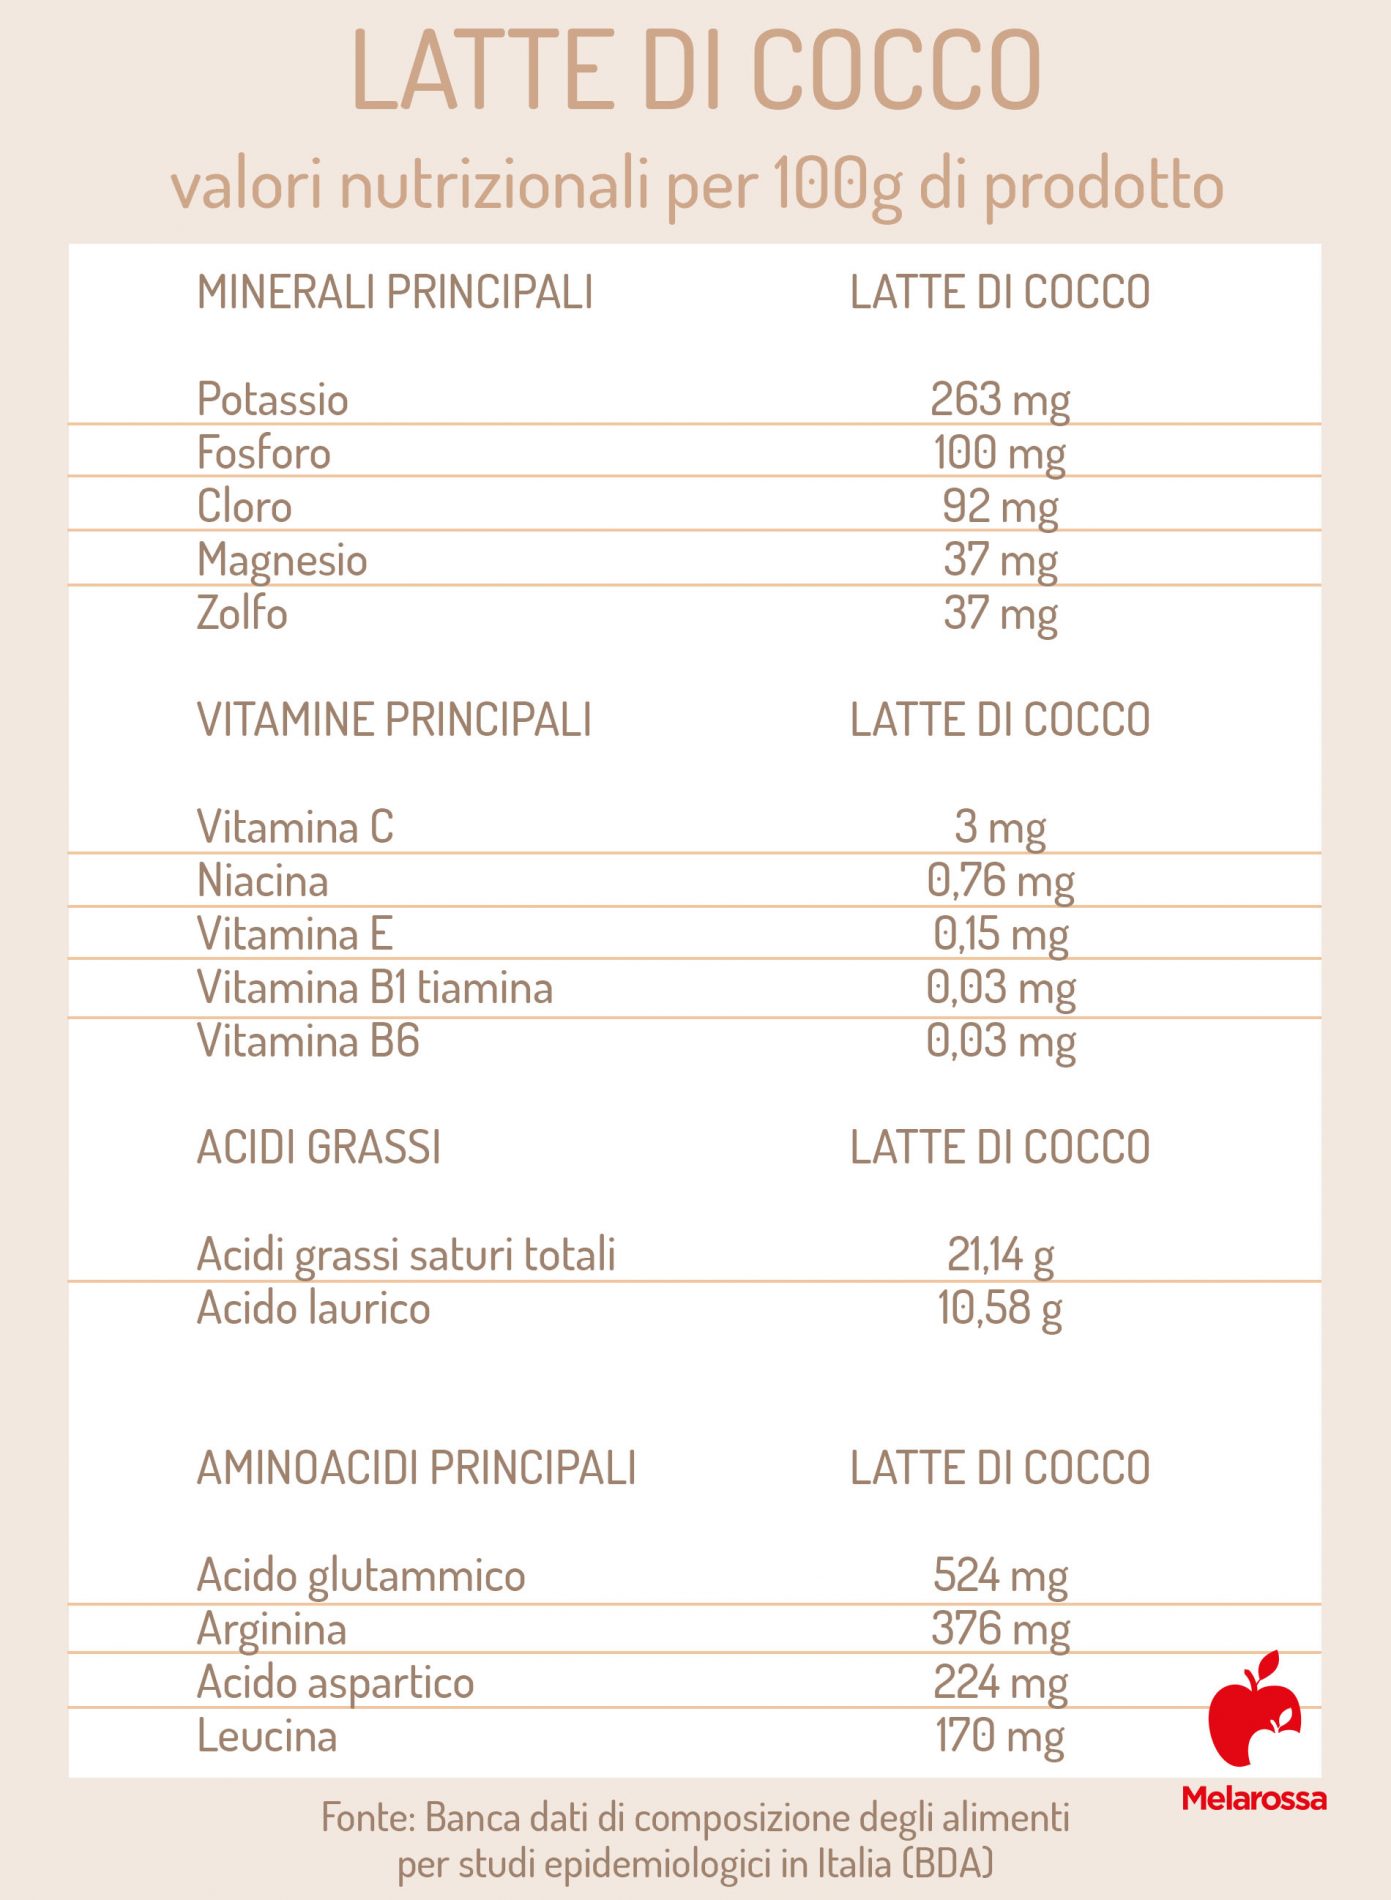 latte di cocco: valori nutrizionali